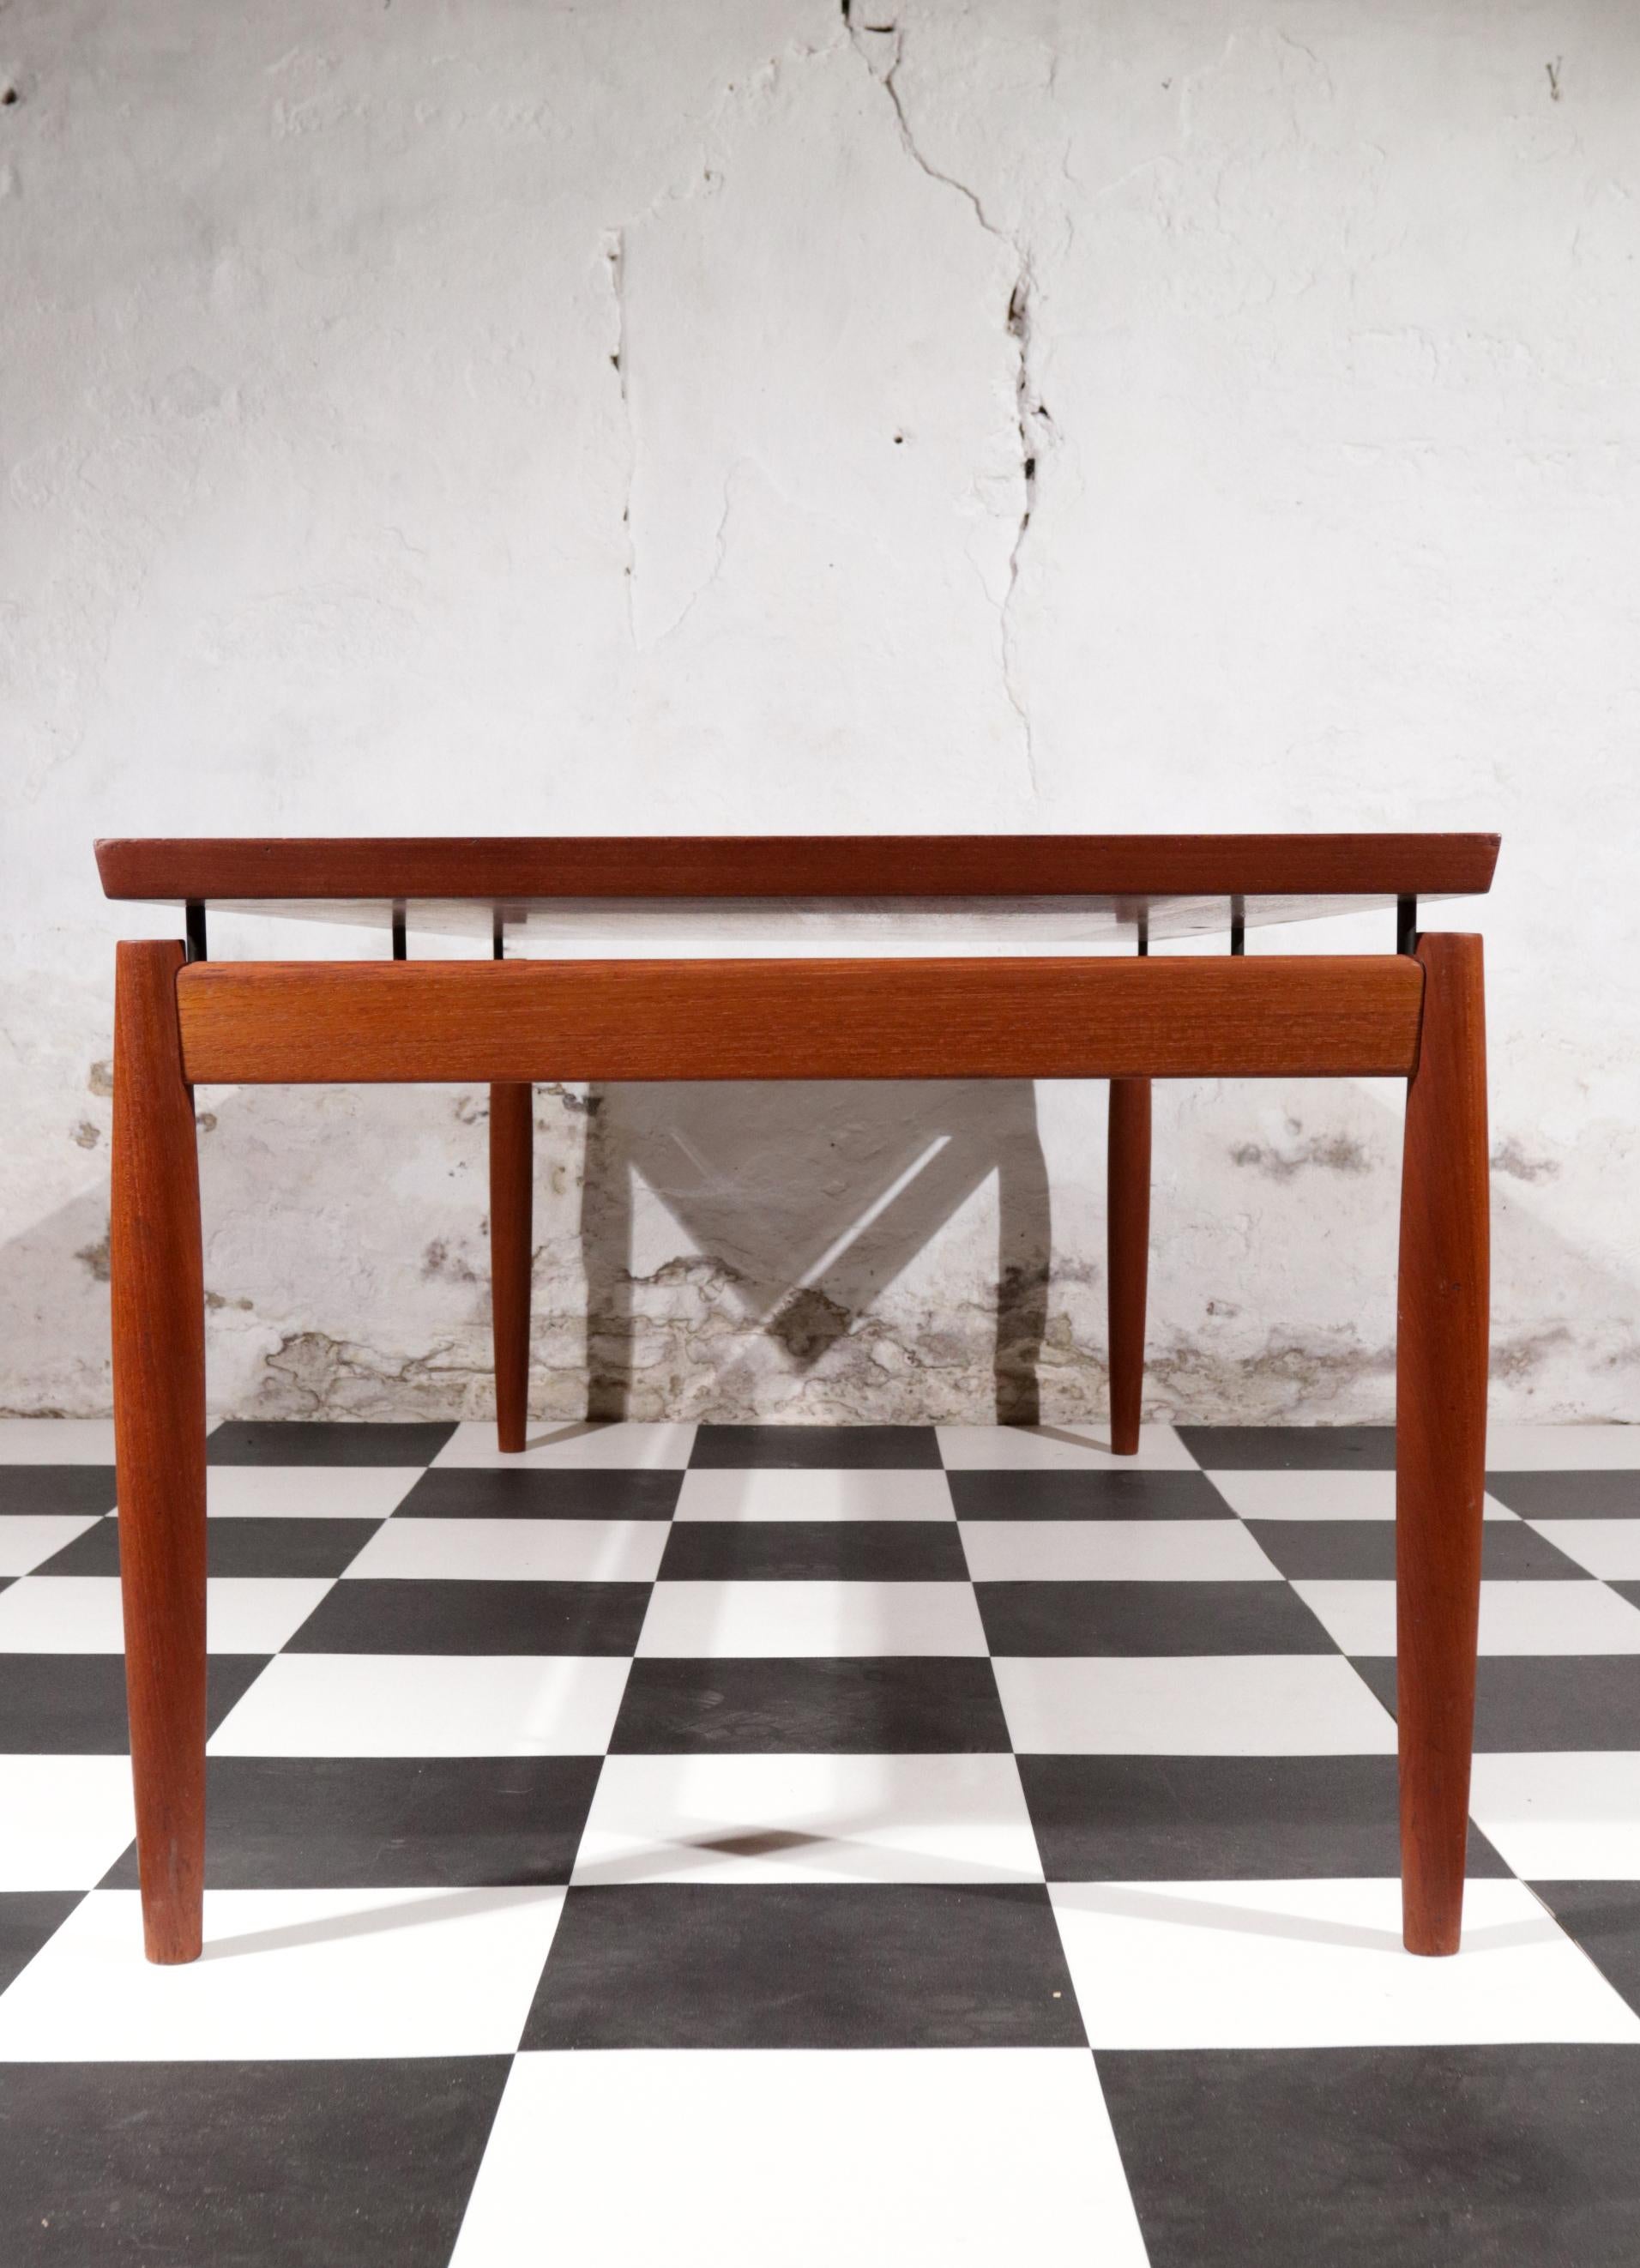 Danish Design Grete Jalk Sofa Table, Model 622 / 54 Teak France & Son, 1960s For Sale 6